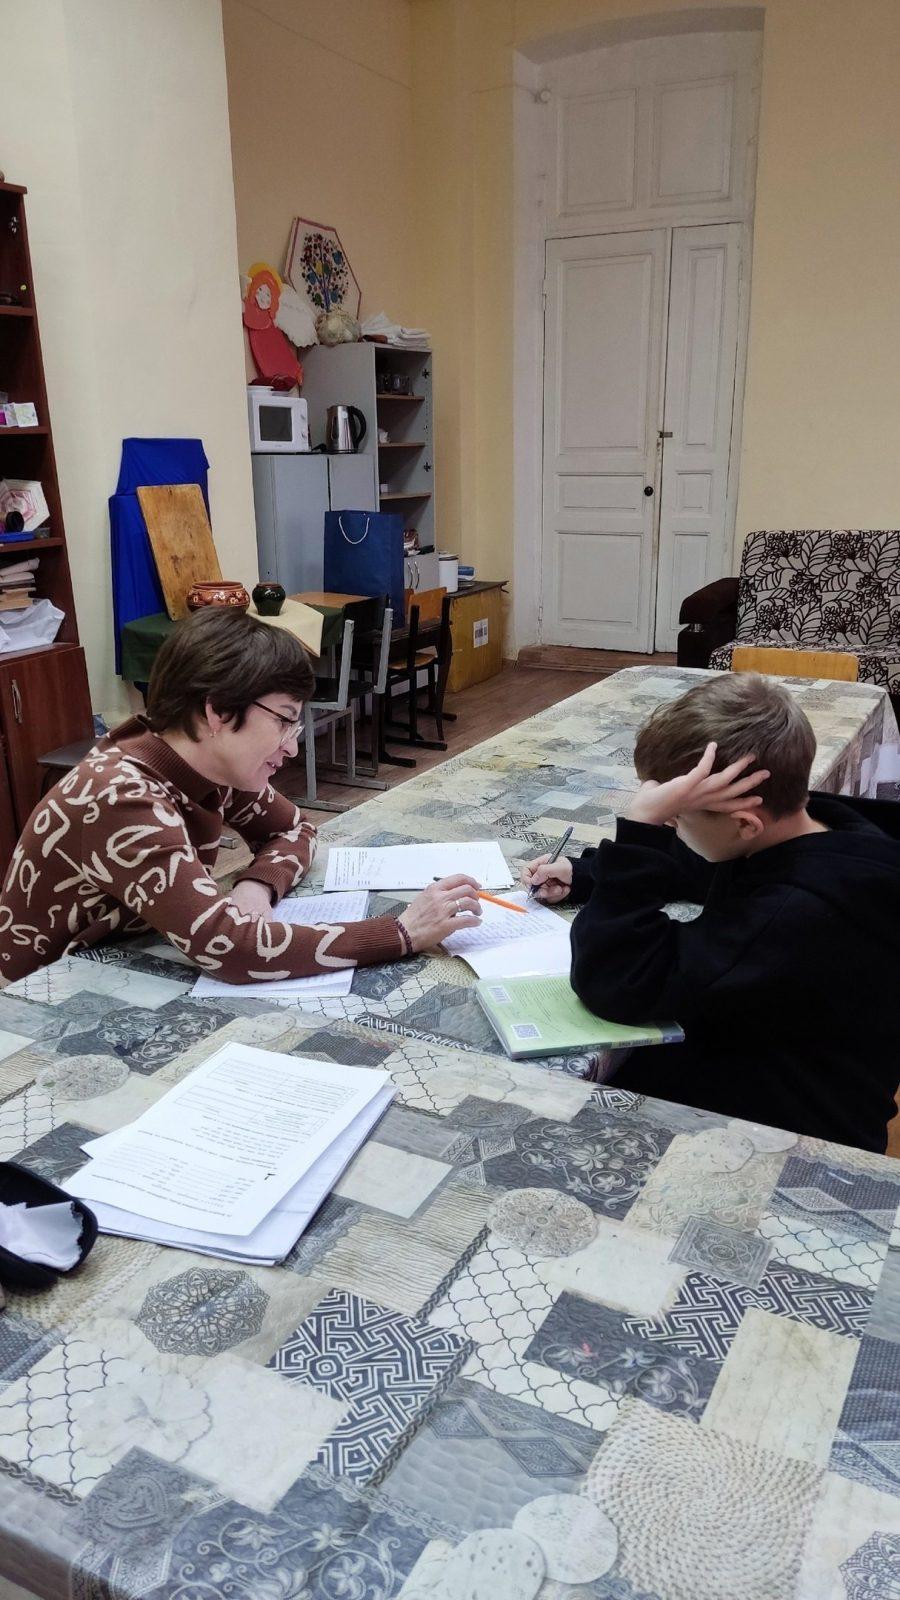 Продолжаются занятия с репетитором по русскому языку с детьми из подопечных семей нашего Центра